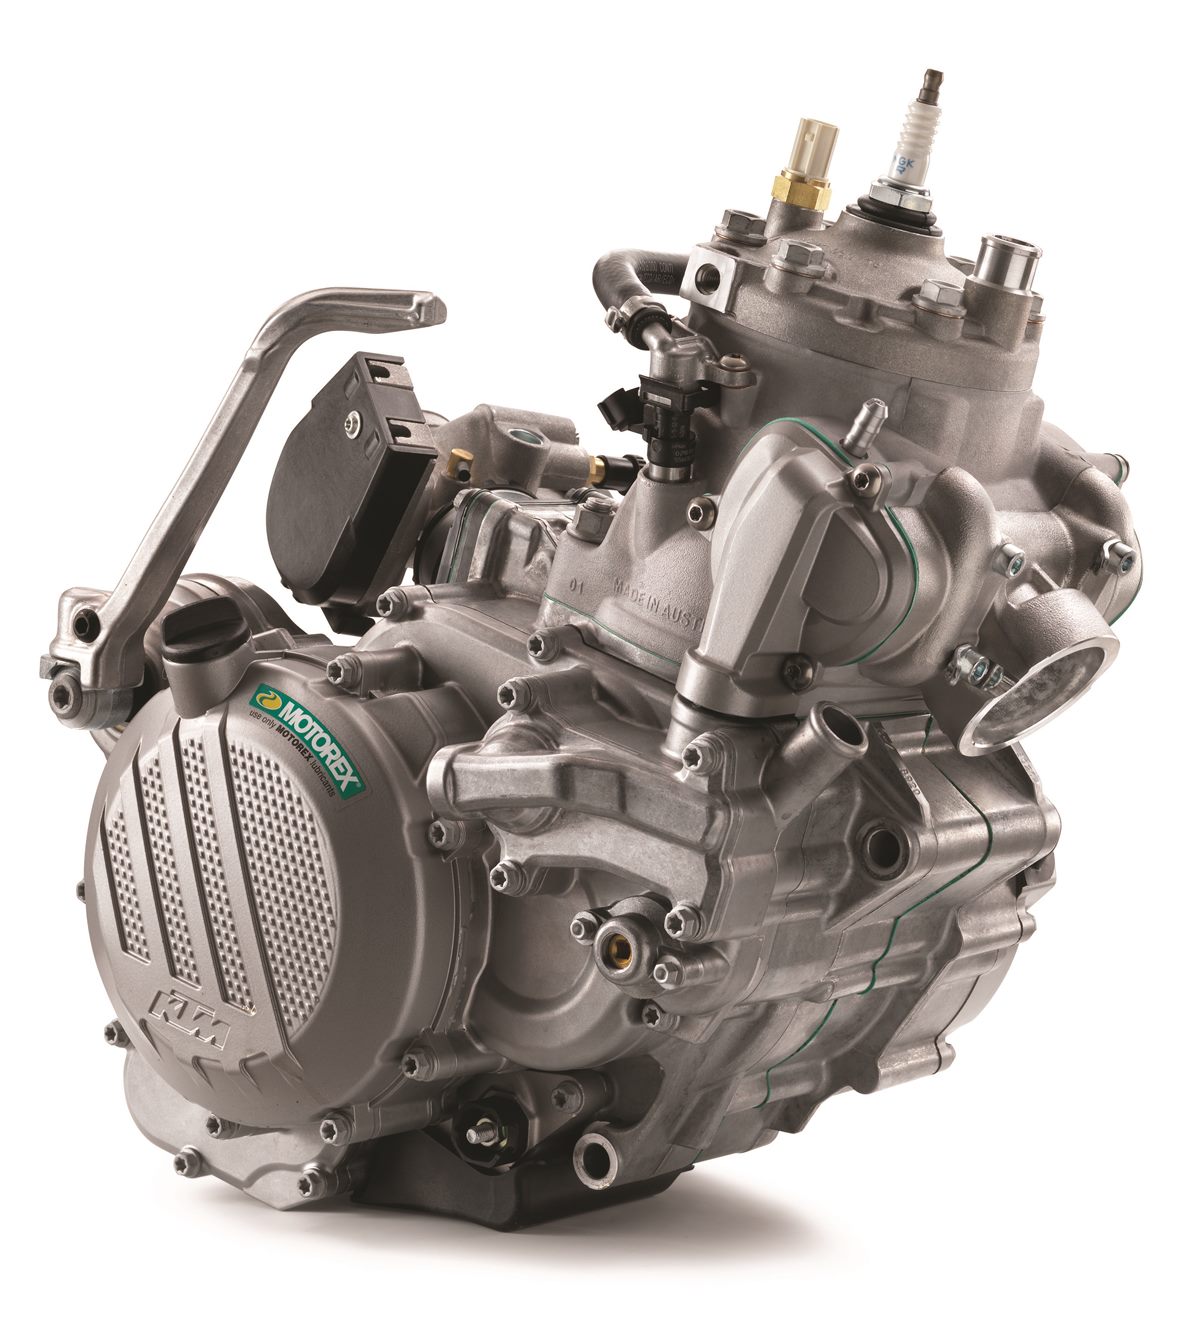 KTM 250_300 EXC TPI MY 2018 Engine